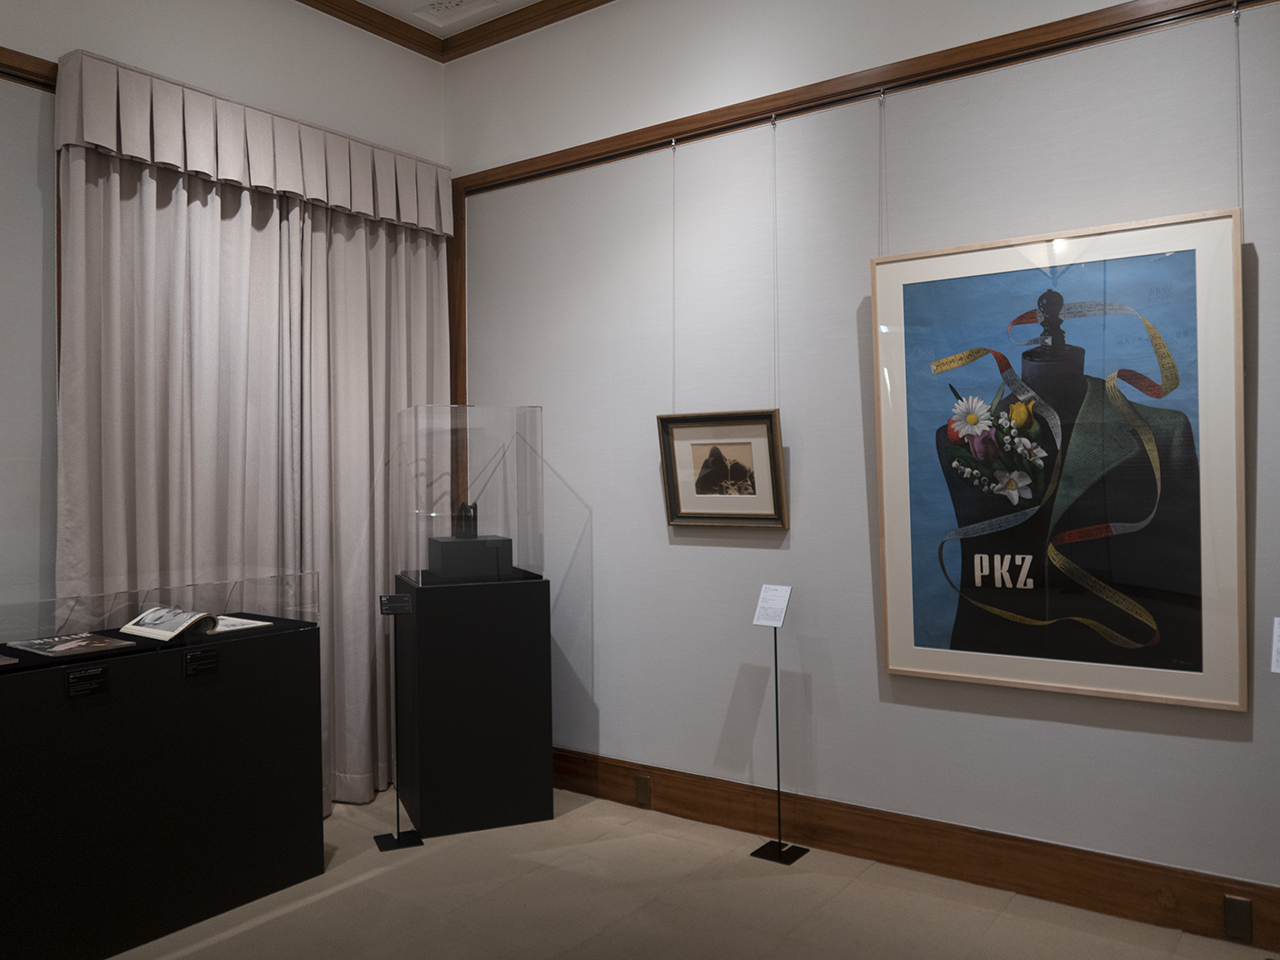 ン・レイのオブジェや写真が並ぶ展示風景、右／ハインリッヒ・マーラー《PKZ社ポスター》（1939年）